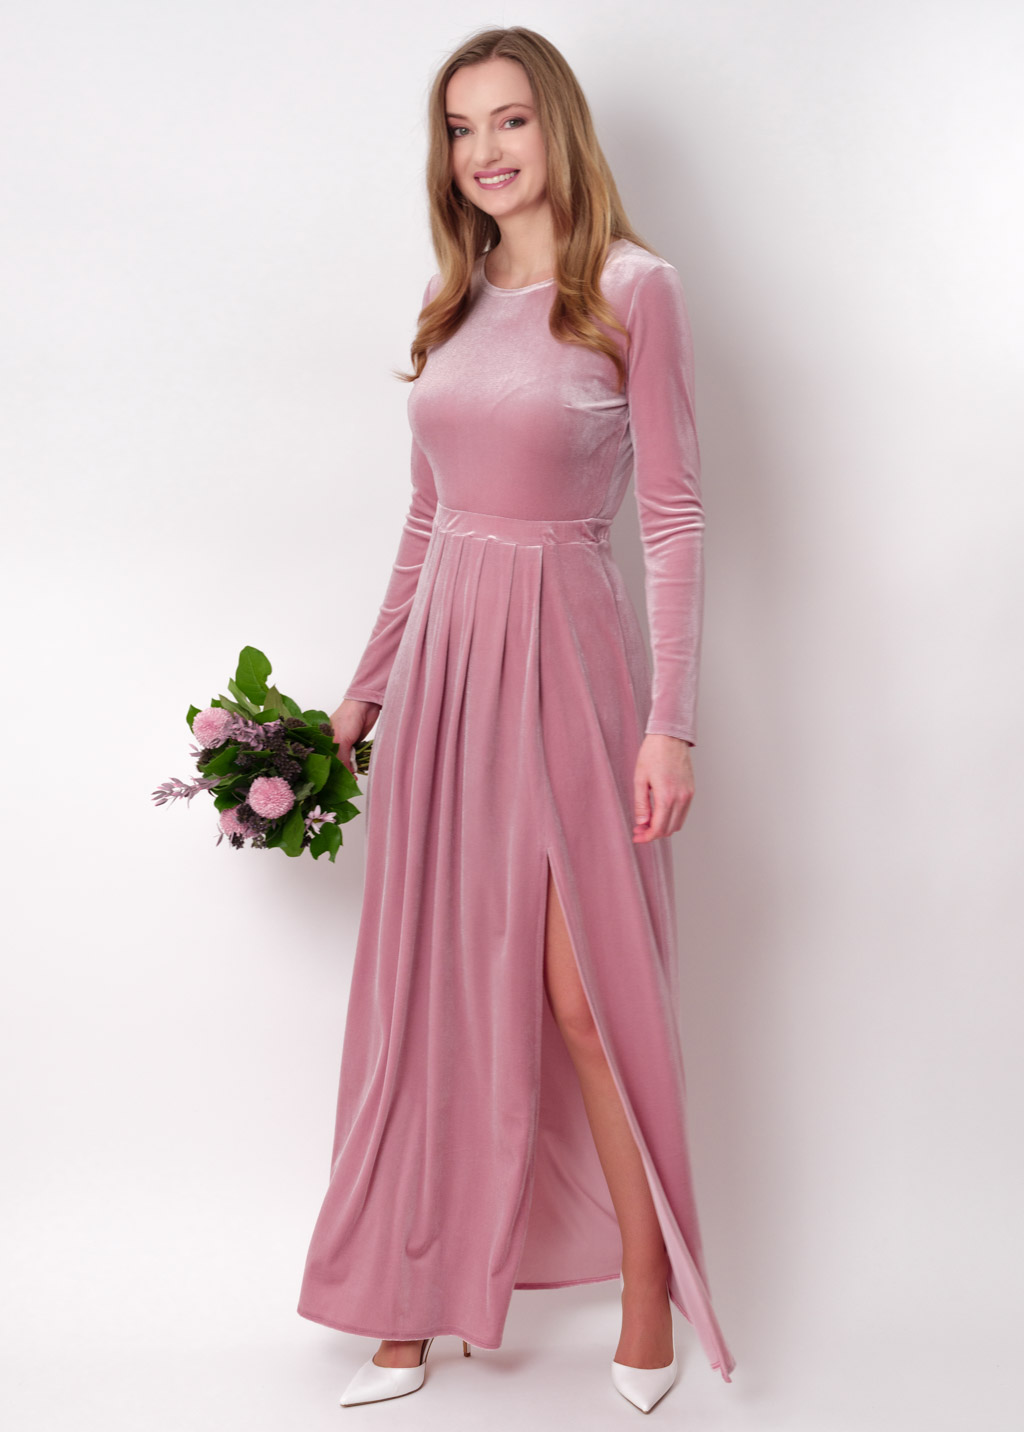 Mauve velvet long dress